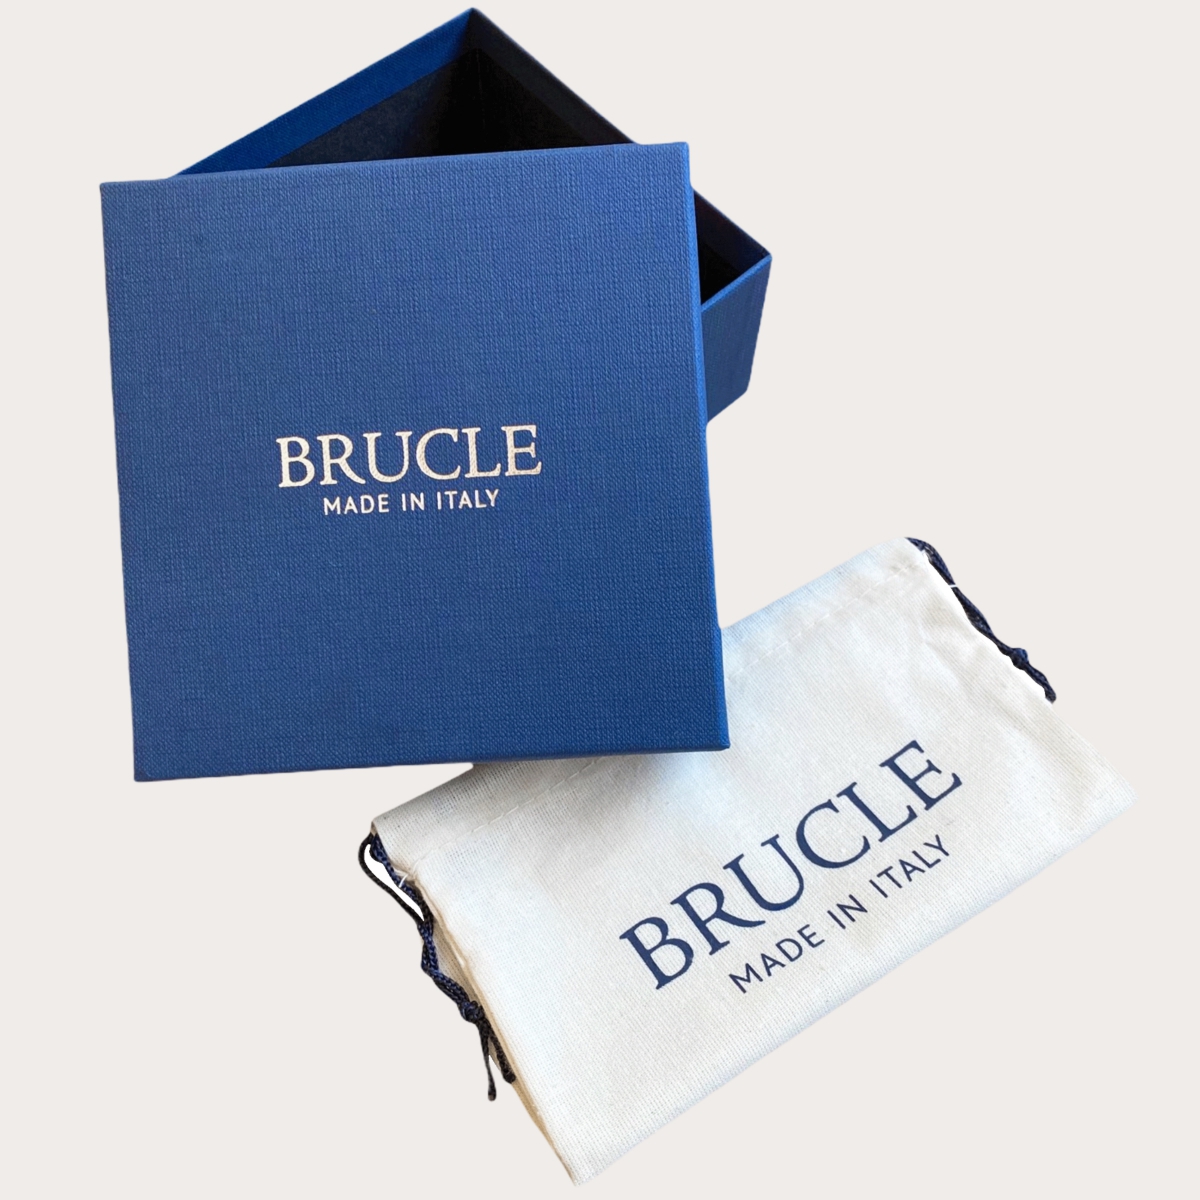 BRUCLE Braided elastic dark brown belt